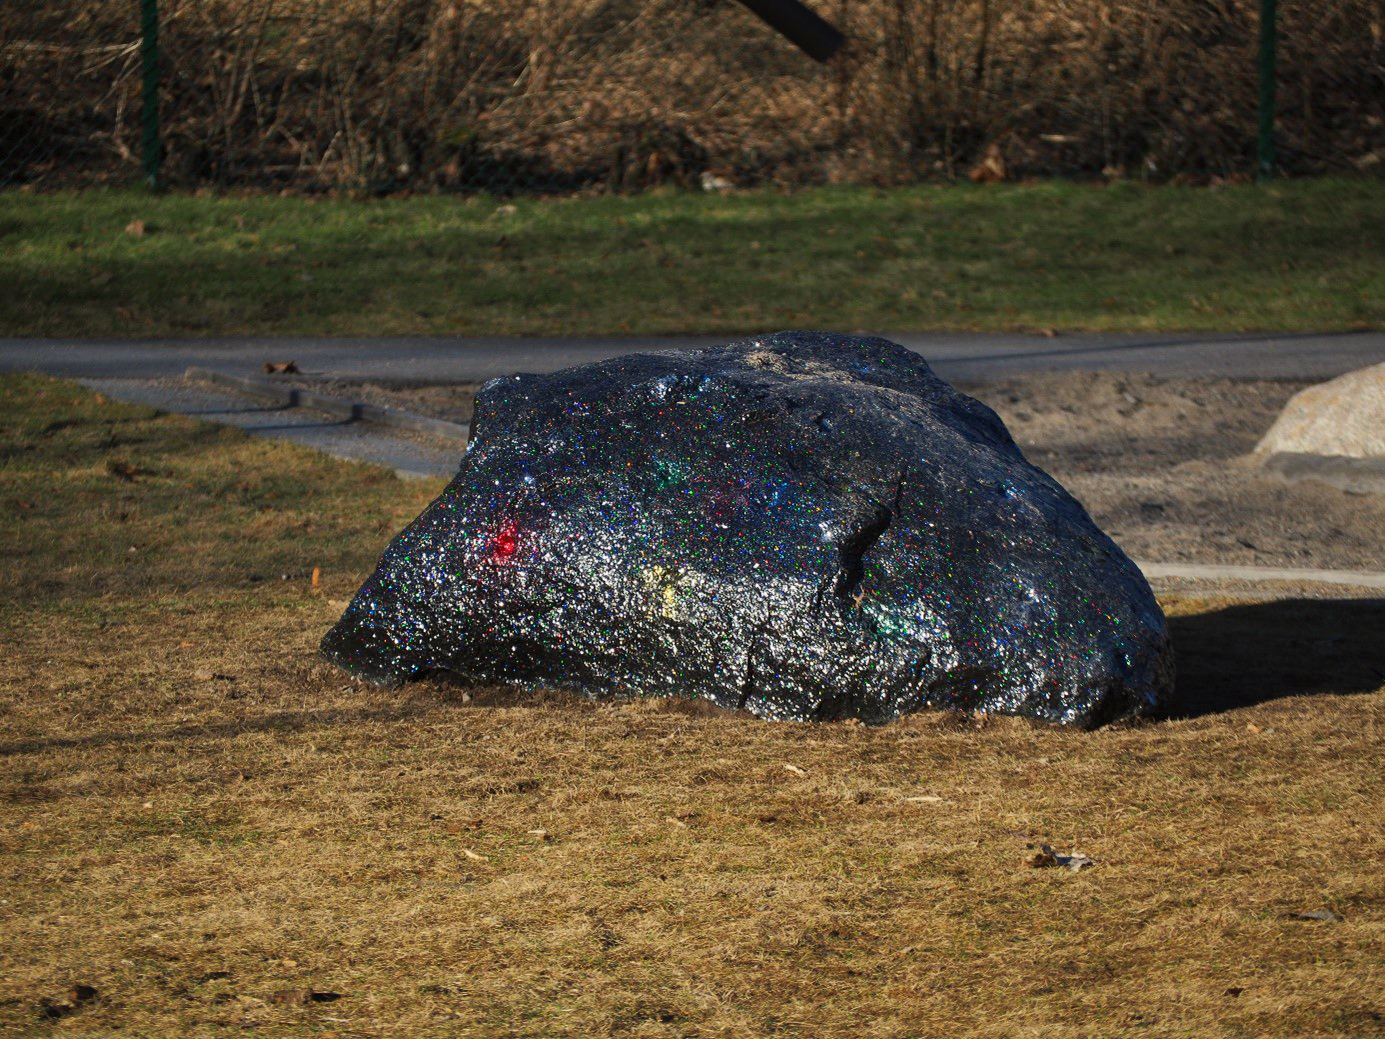 En sten beklädd med glitterlack.